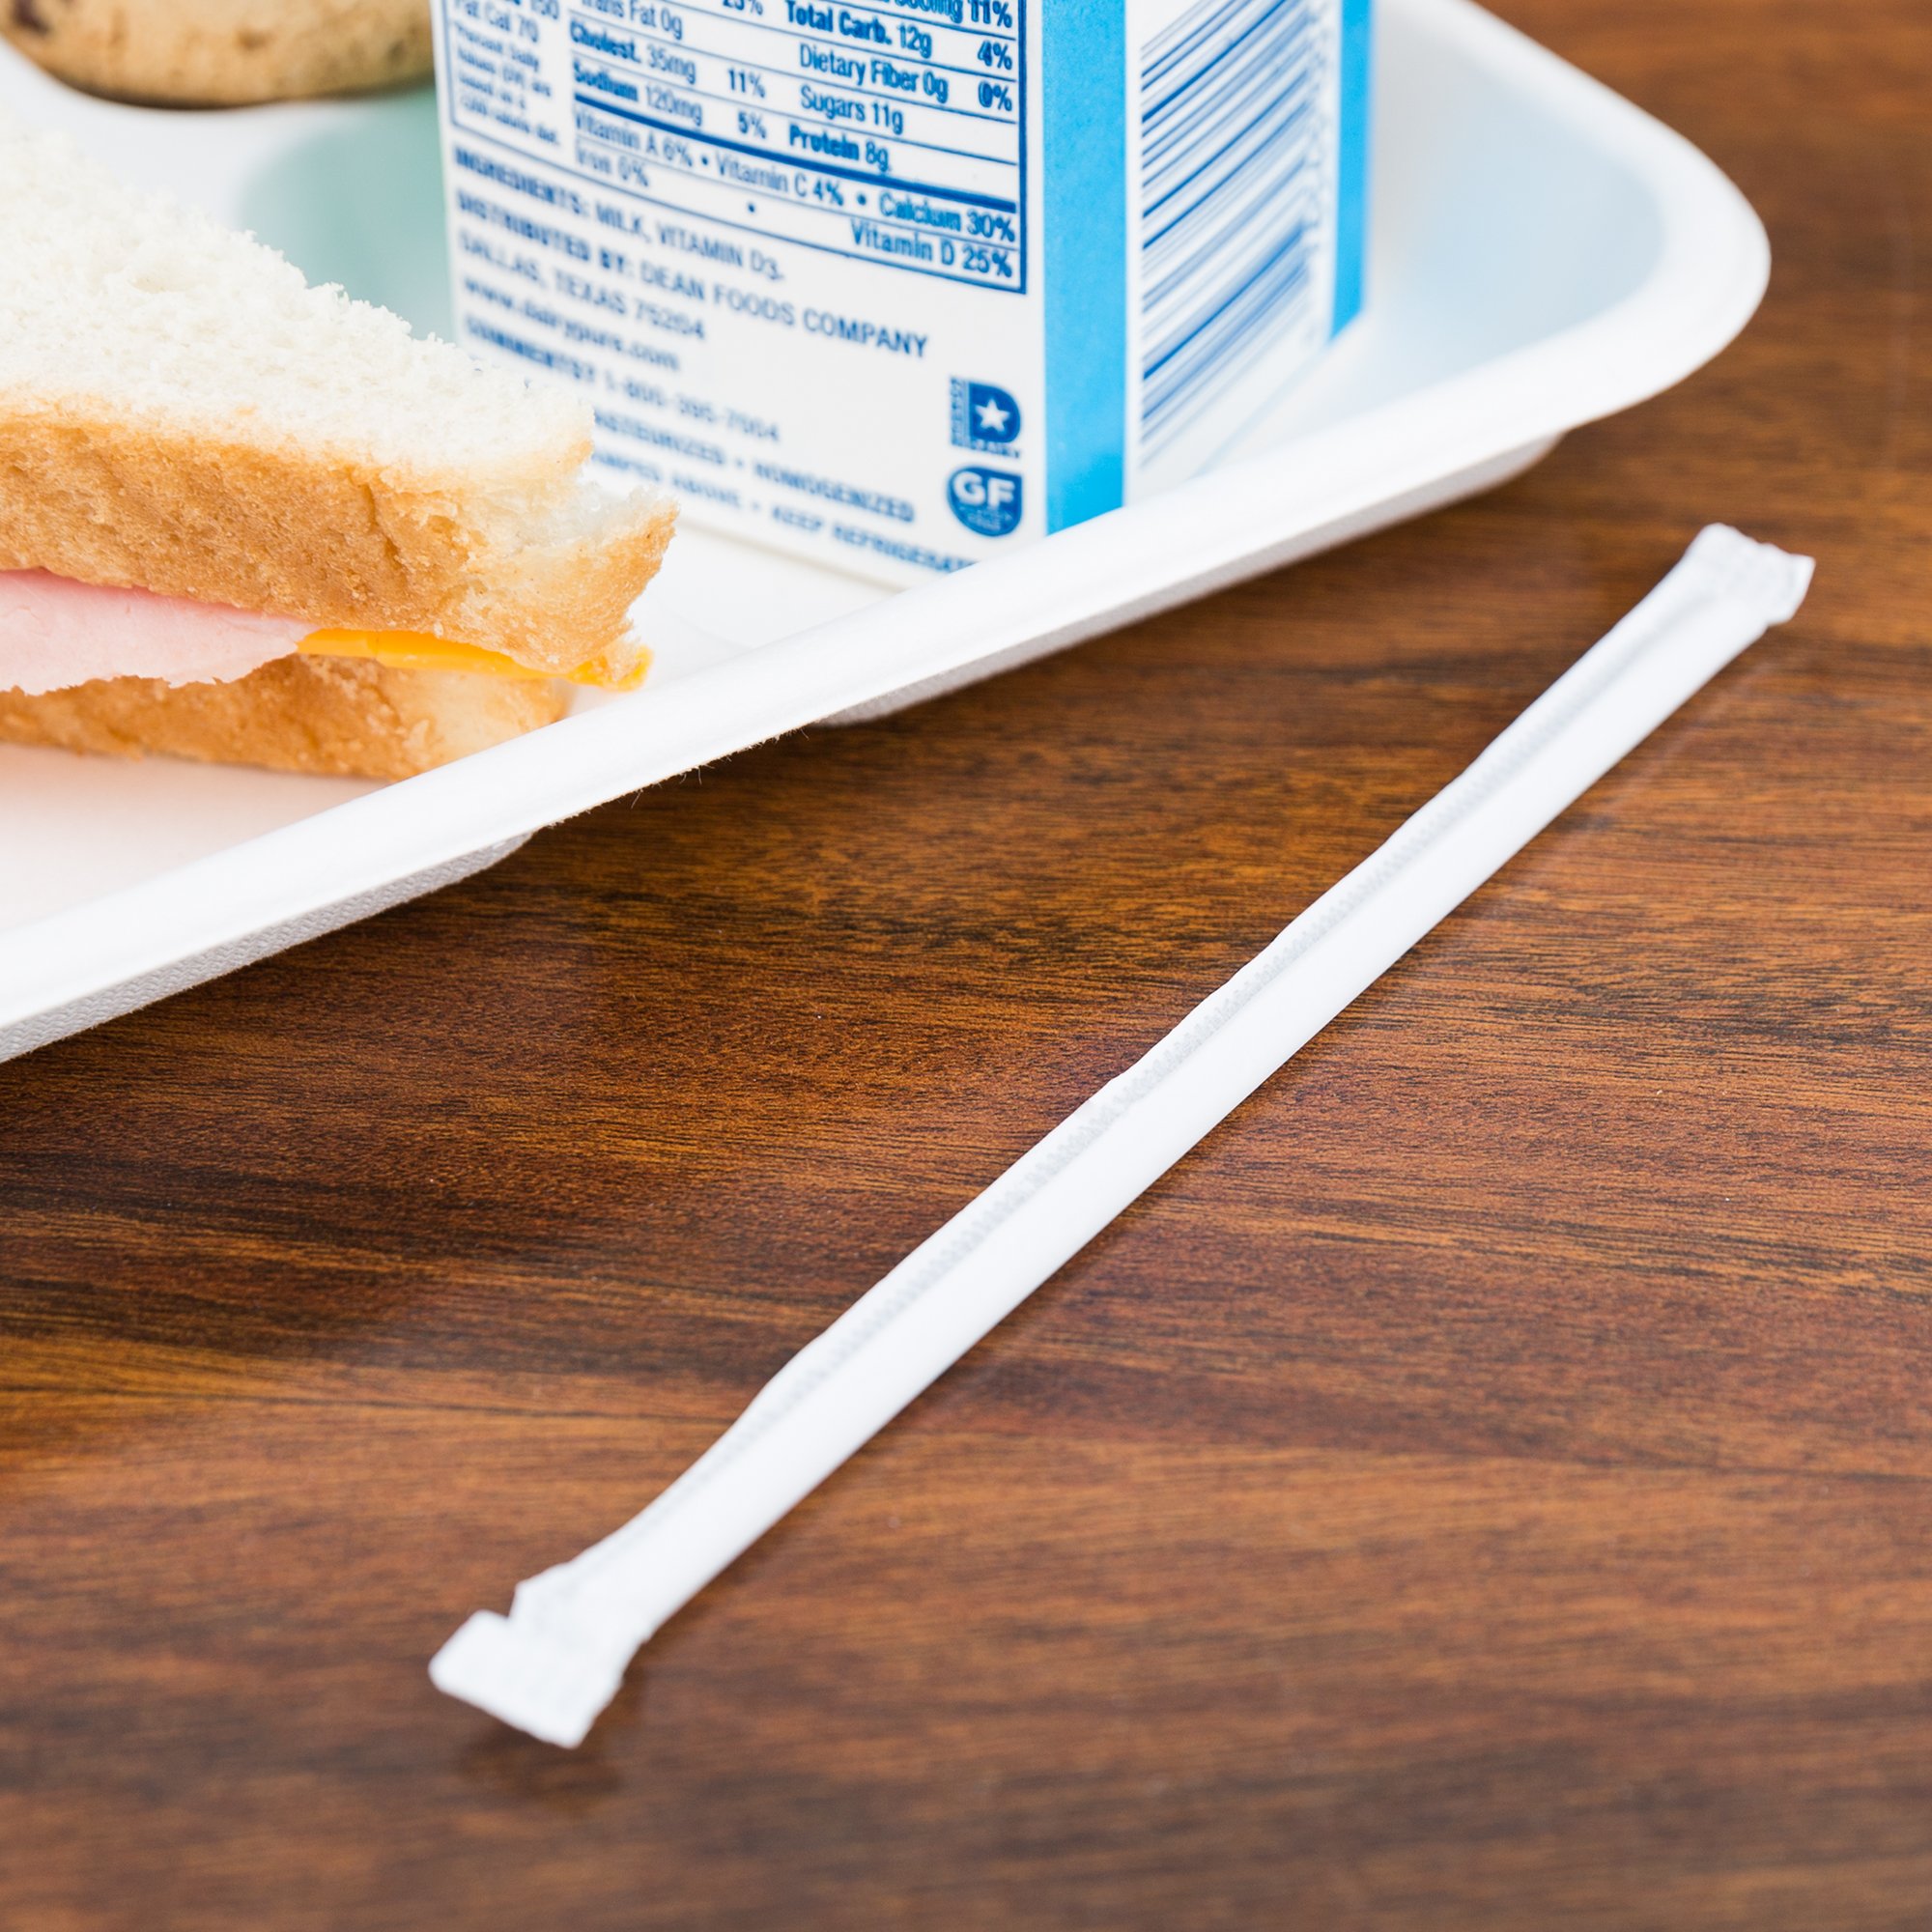 Молочная соломинка в индивидуальной упаковке рядом с обеденным подносом